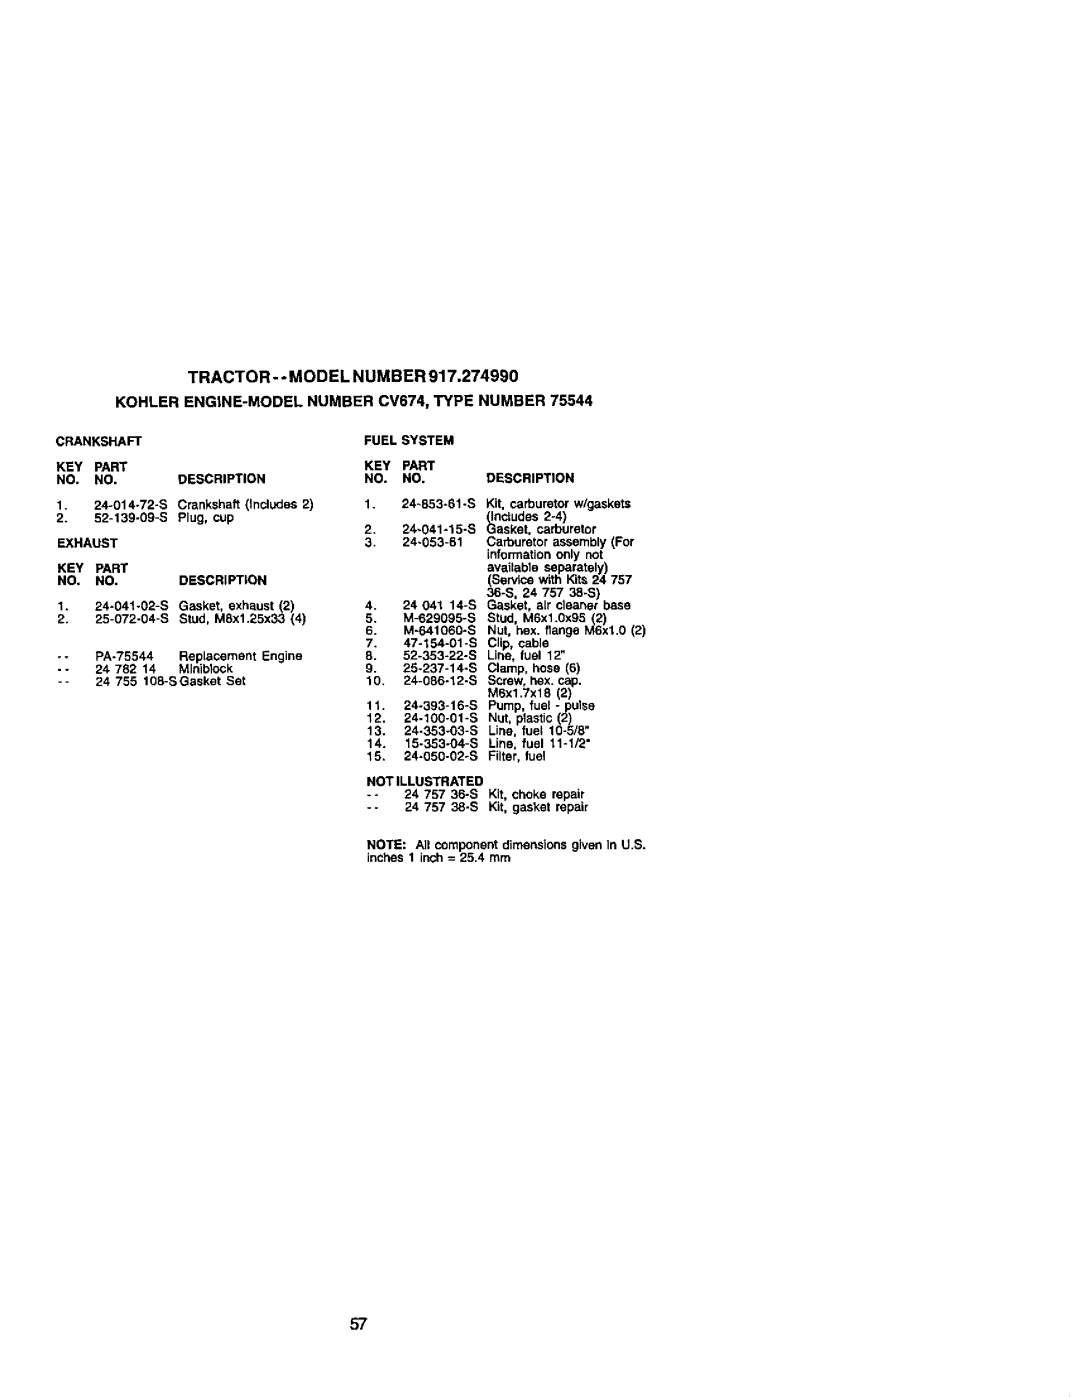 Craftsman 917.27499 manual KOHLEB ENGiNE-MODELNUMBERCV674,TYPE NUMBER, Tractor- - Model Number 